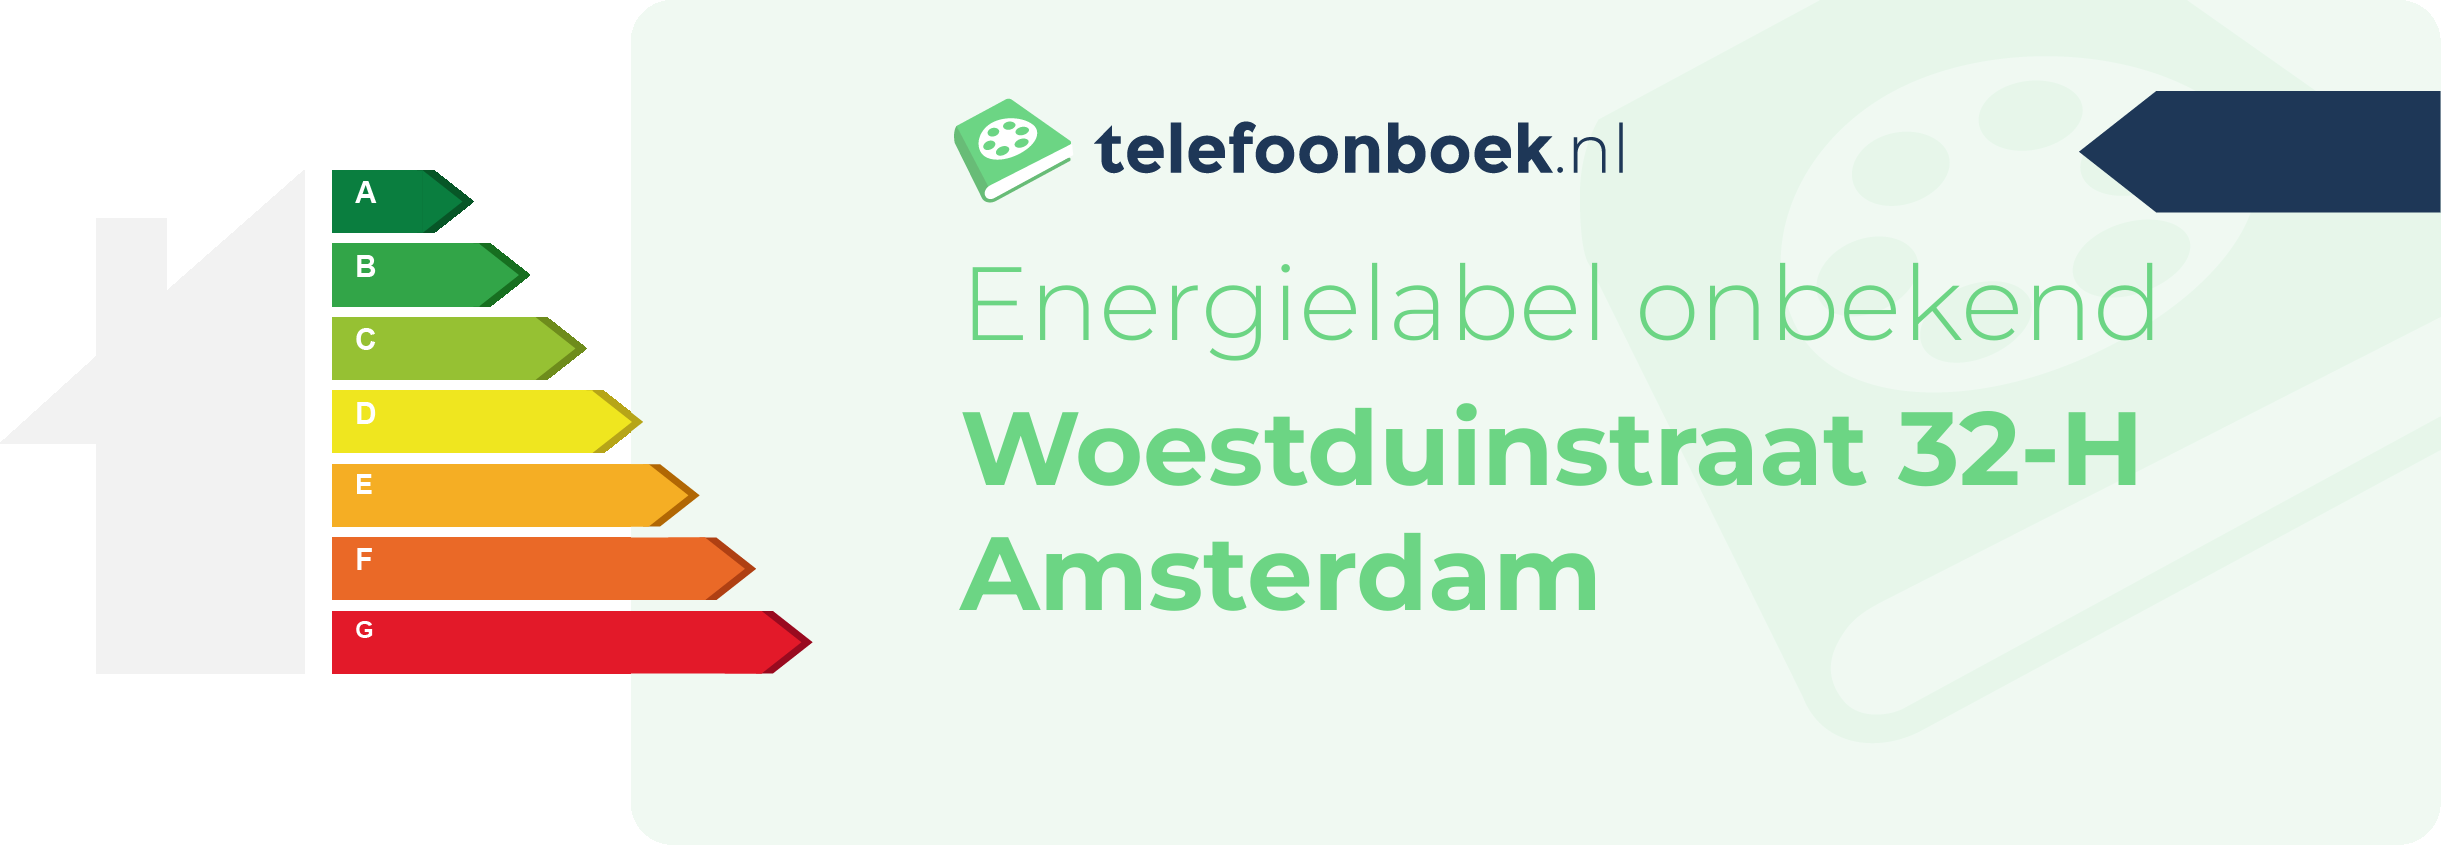 Energielabel Woestduinstraat 32-H Amsterdam